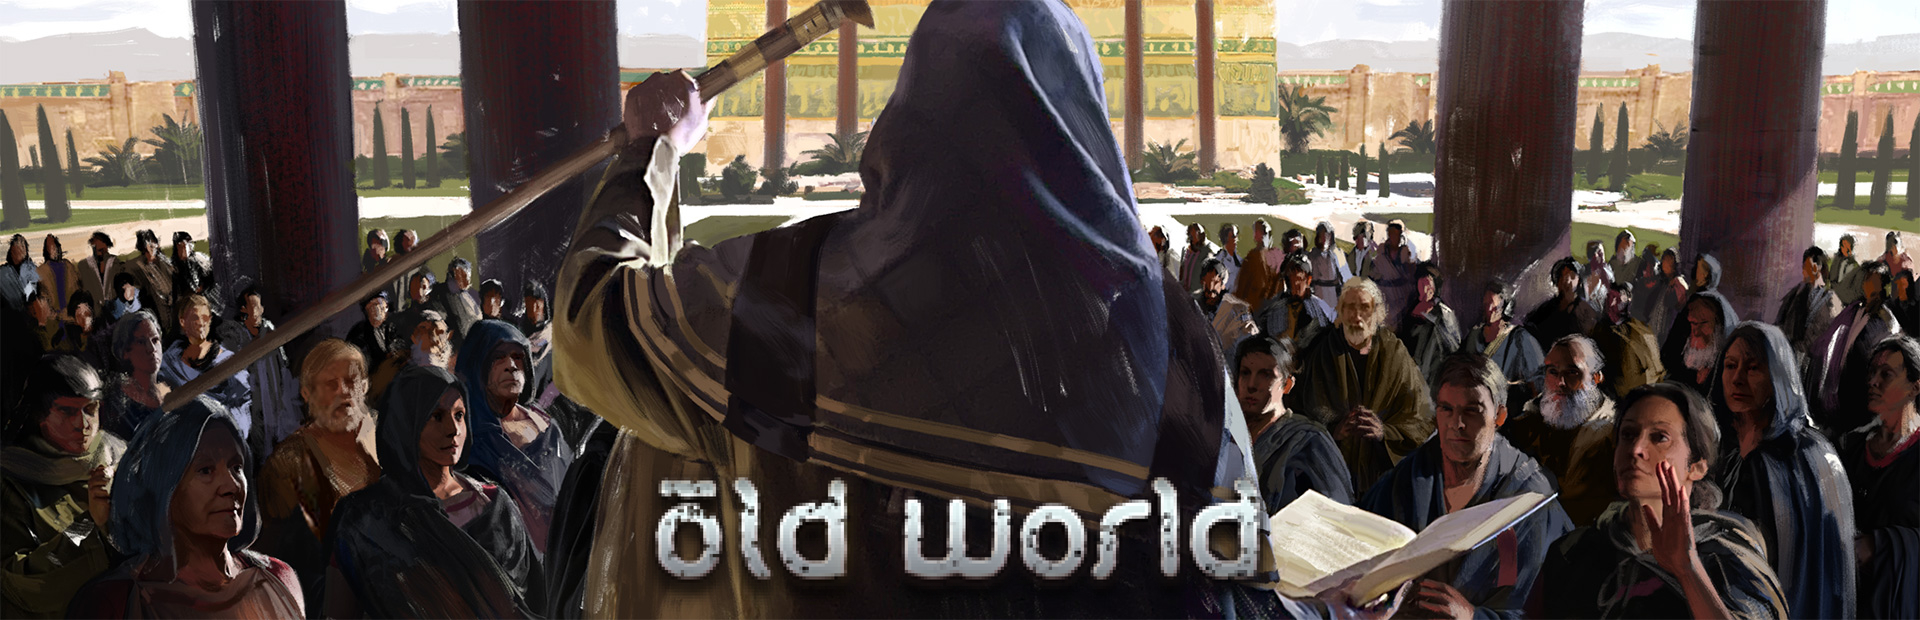 دانلود بازی Old World برای PC | گیمباتو